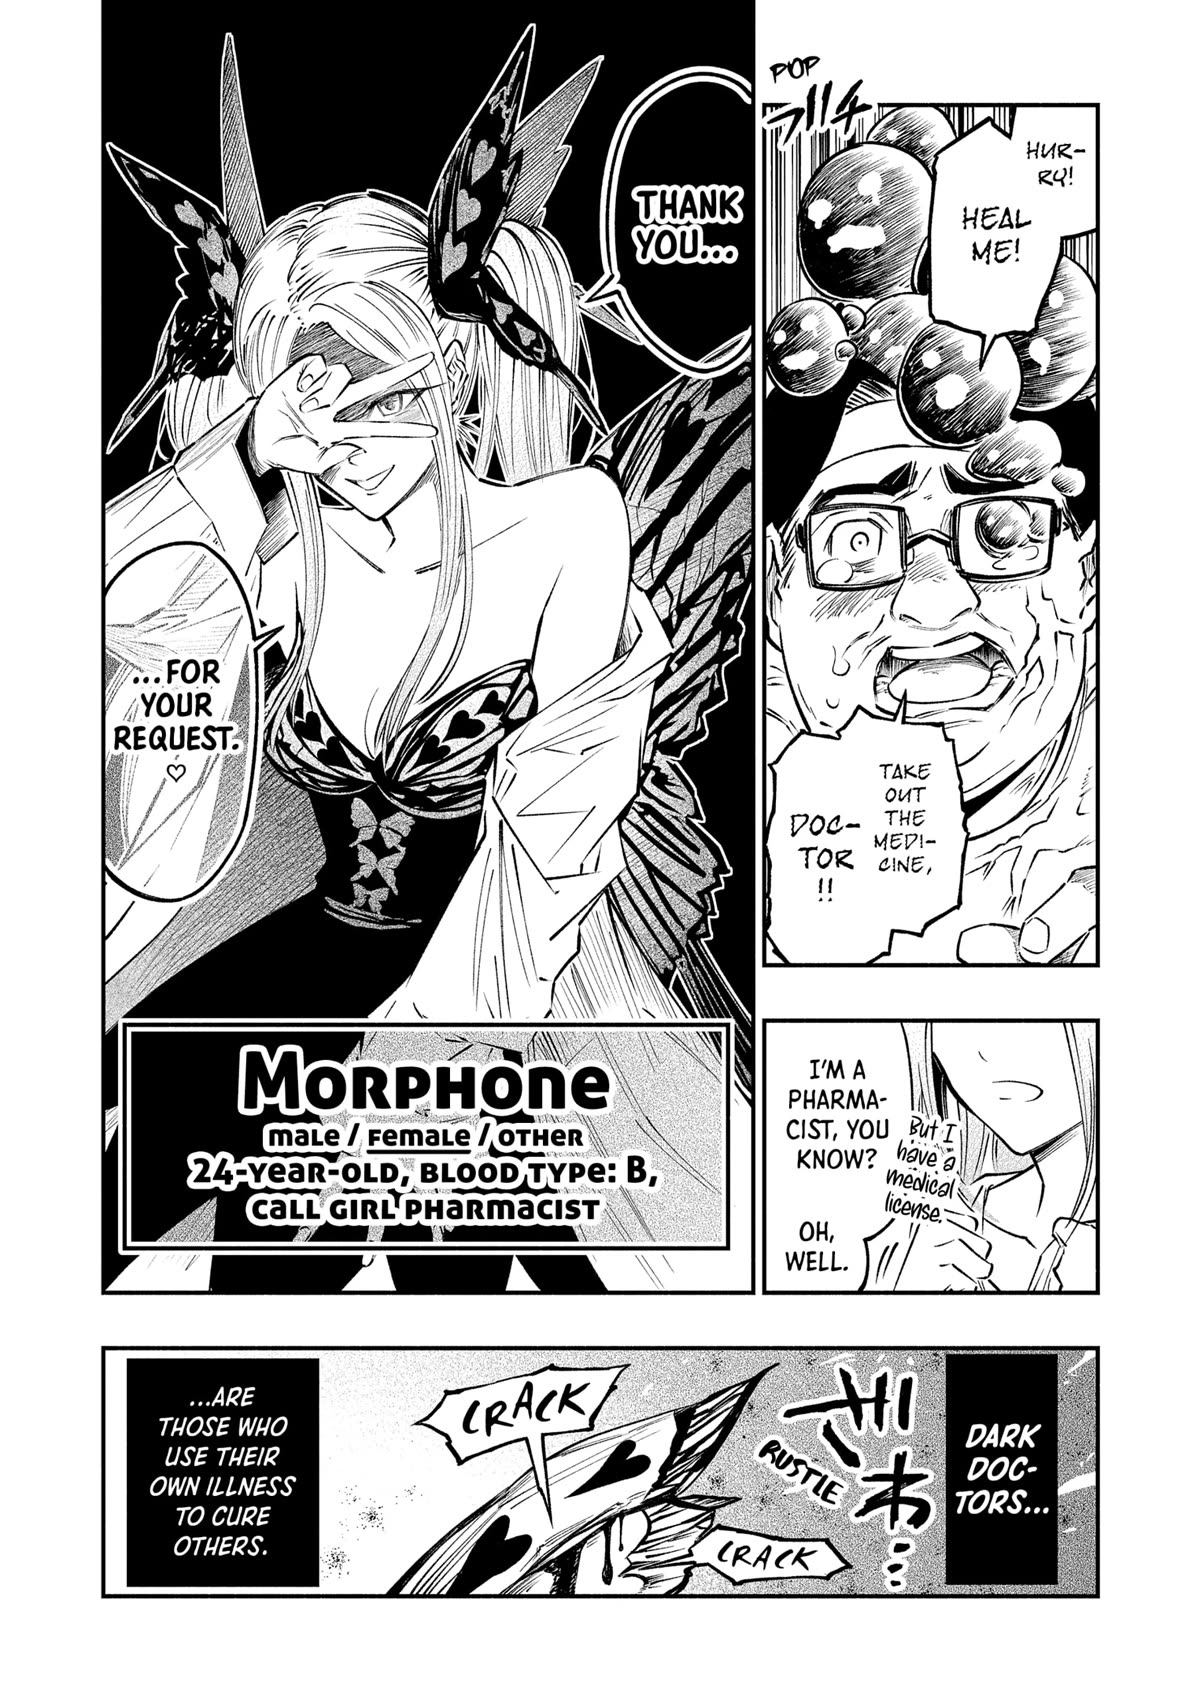 The Dark Doctor Ikuru - Page 2